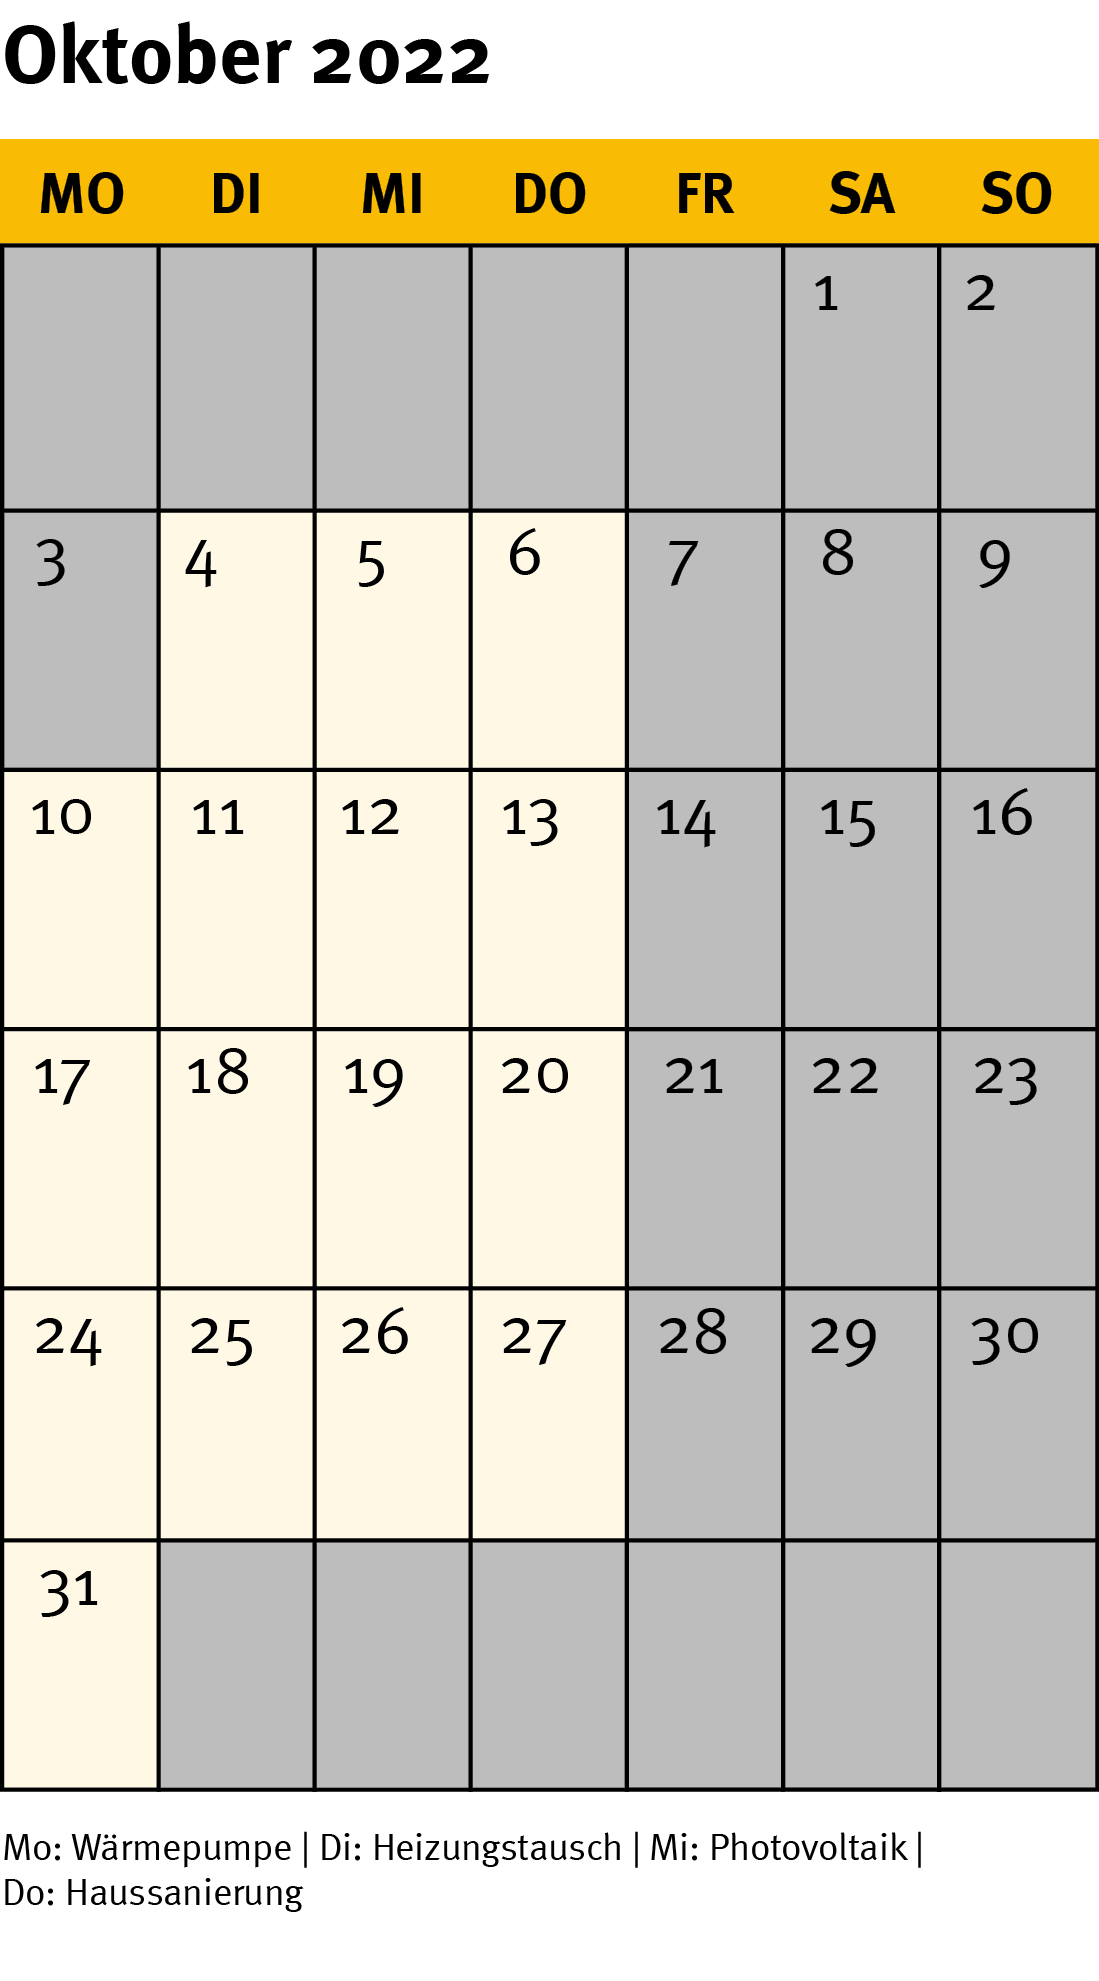 Die Grafik zeigt ein Kalenderblatt für den Monat Oktober 2022.